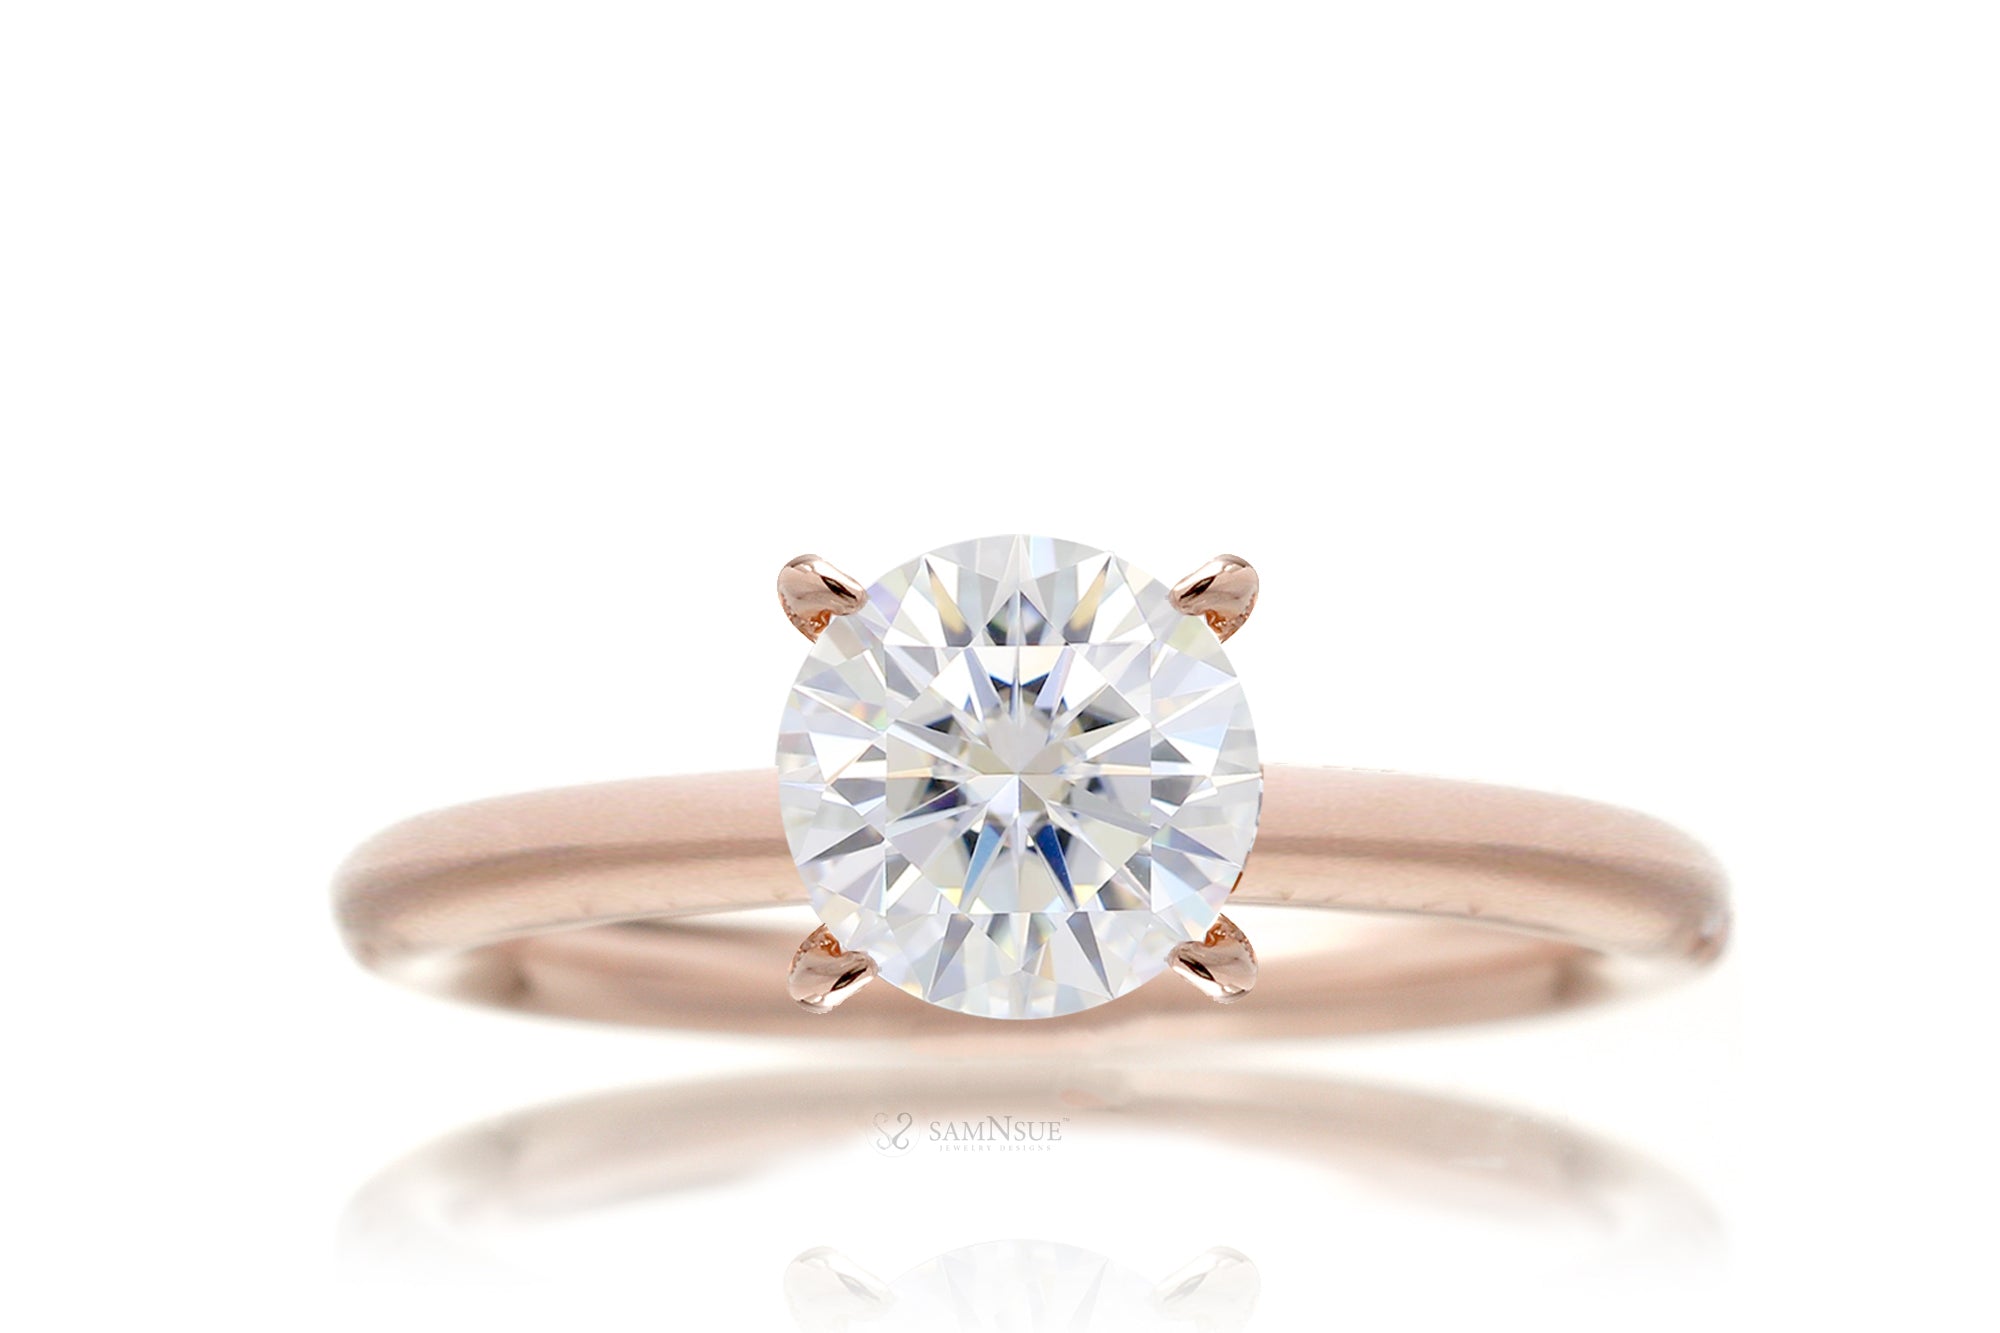 The Ava Round Diamond Ring (Lab-Grown)